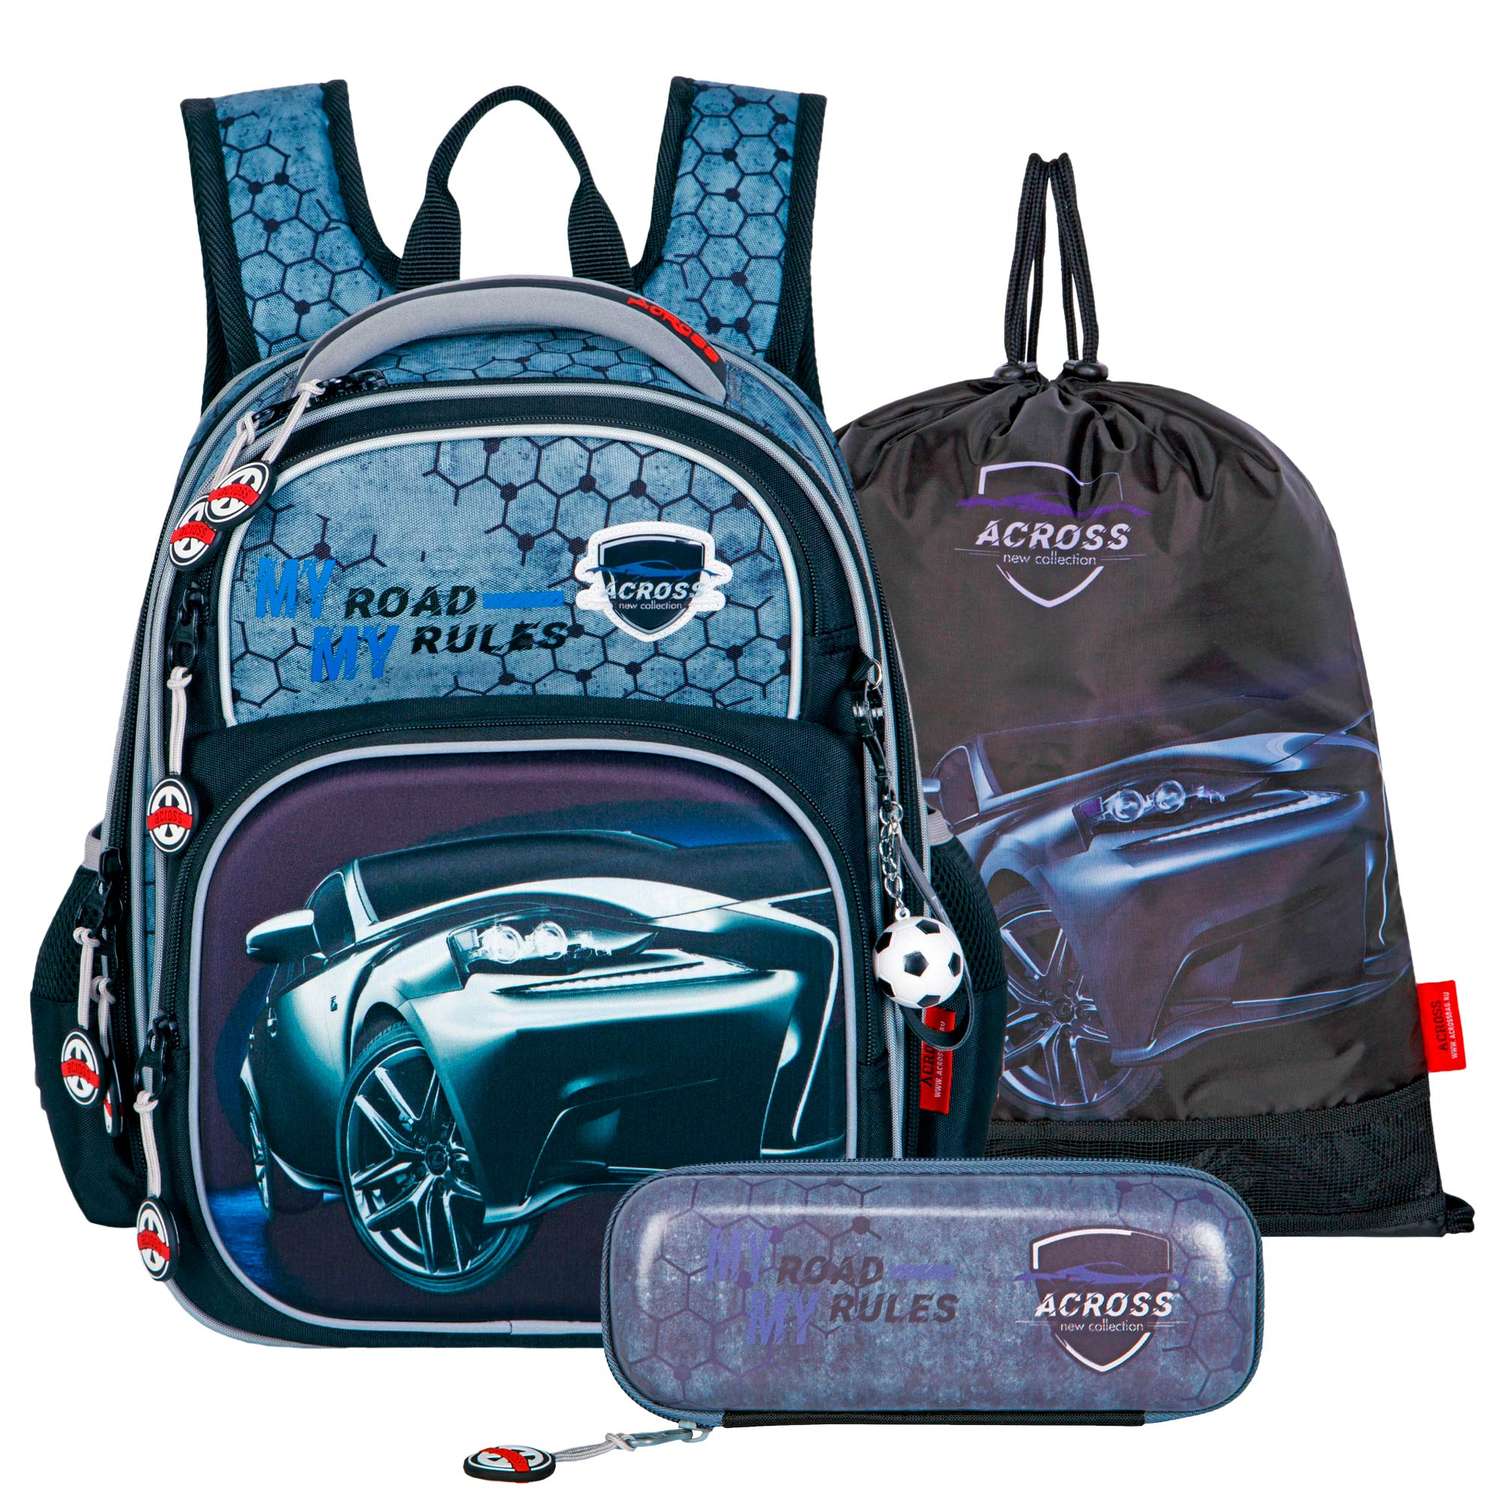 Рюкзак школьный ACROSS с наполнением: каркасный пенал мешочек для обуви и брелок - фото 1